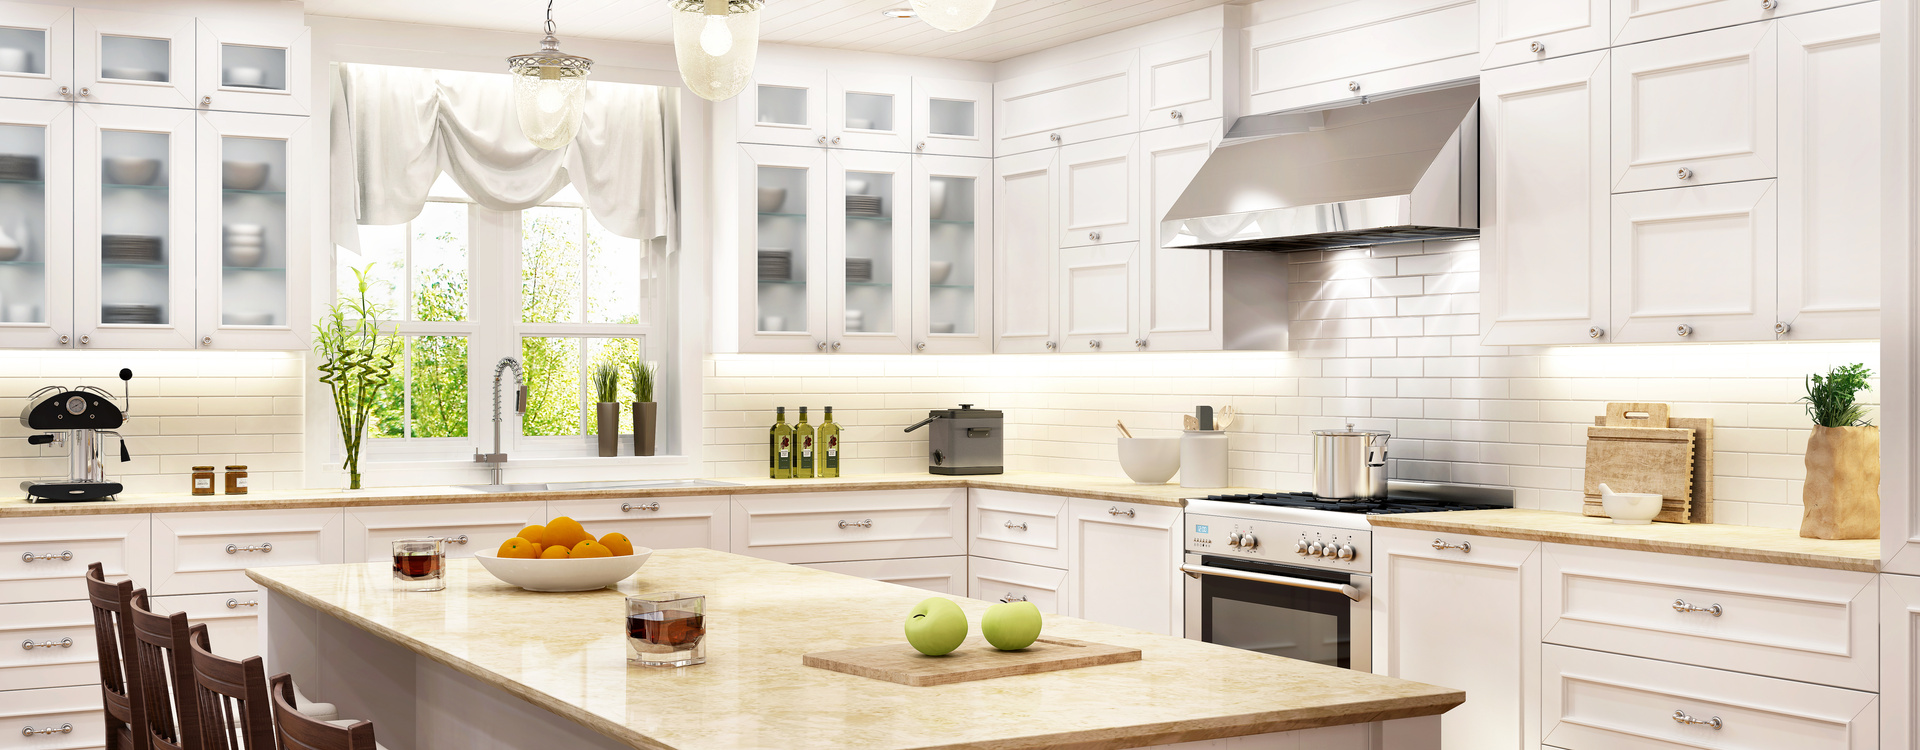 Luxury white kitchen with kitchen island